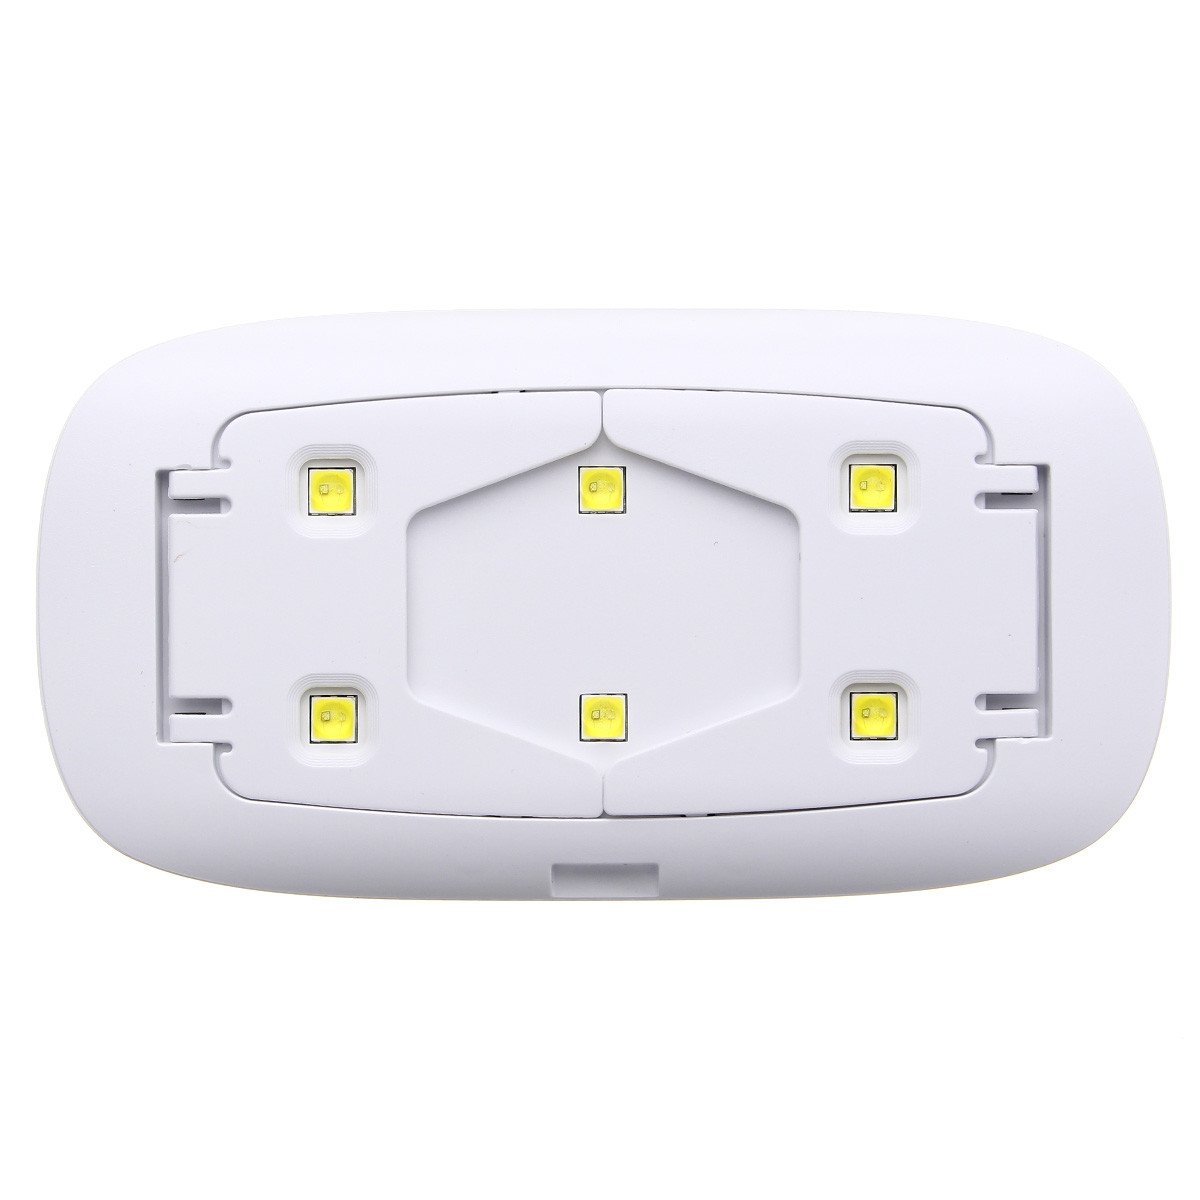 100-240V-Mini-UV-Nail-Art-Lamp-LED-Curing-Manicure-Tools-Gel-Polish-USB-Dryer-Portable-1197072